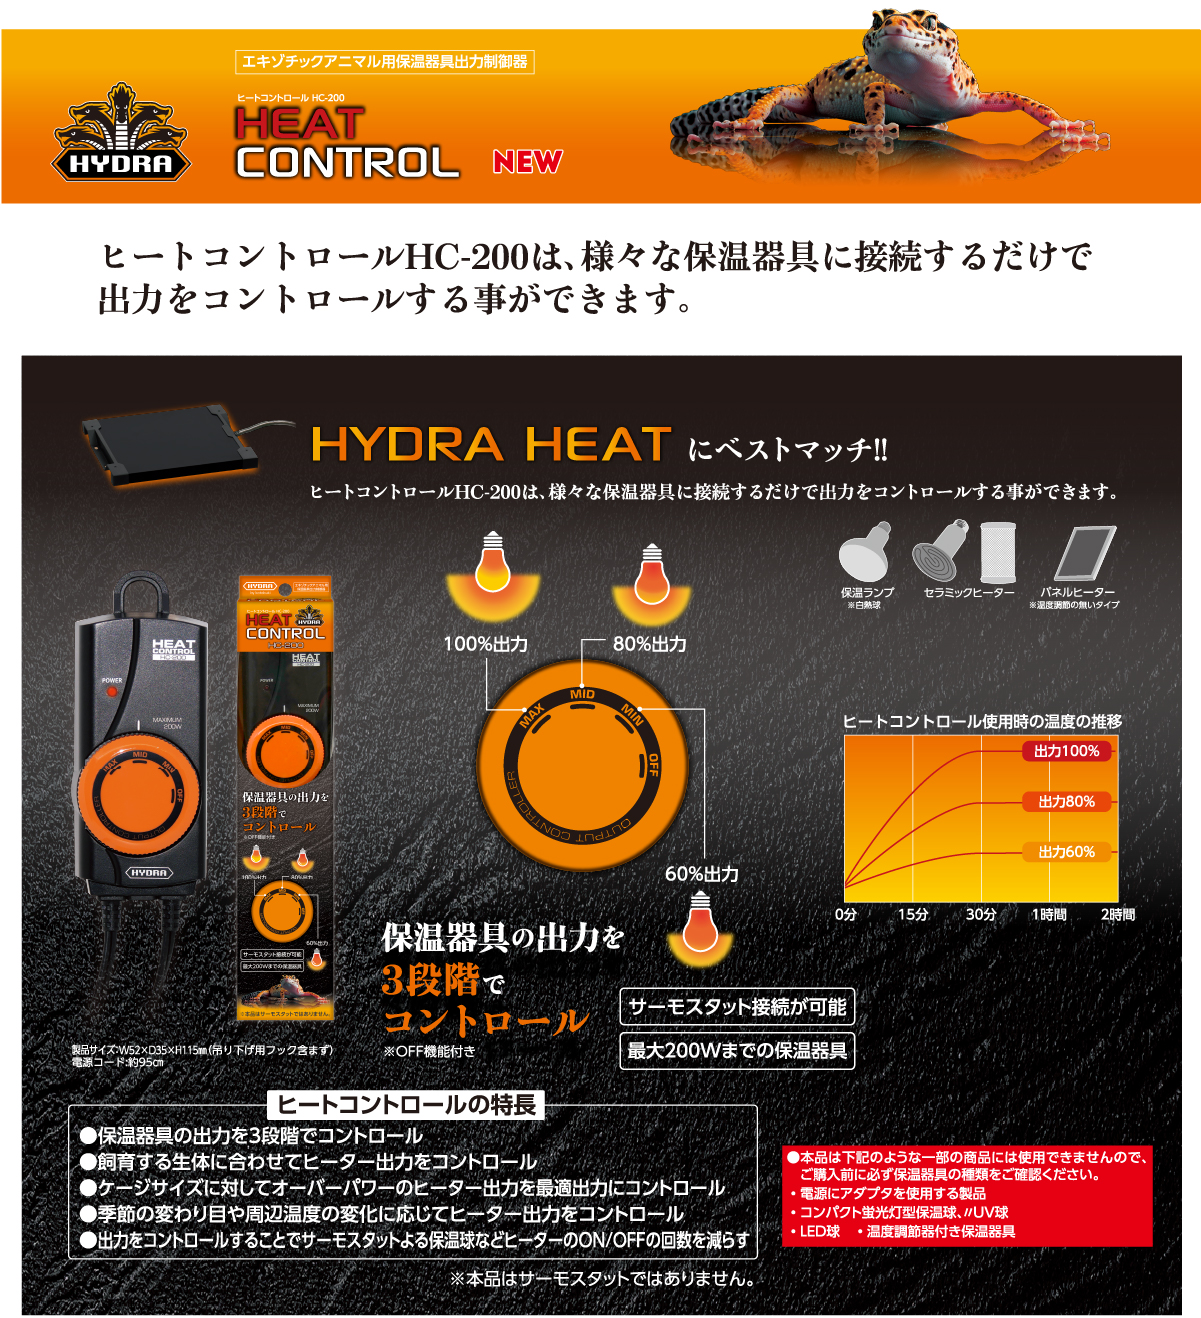 HYDRA CONTROL ヒートコントロールHC-200は、様々な保温器具に接続するだけで出力をコントロールする事ができます。